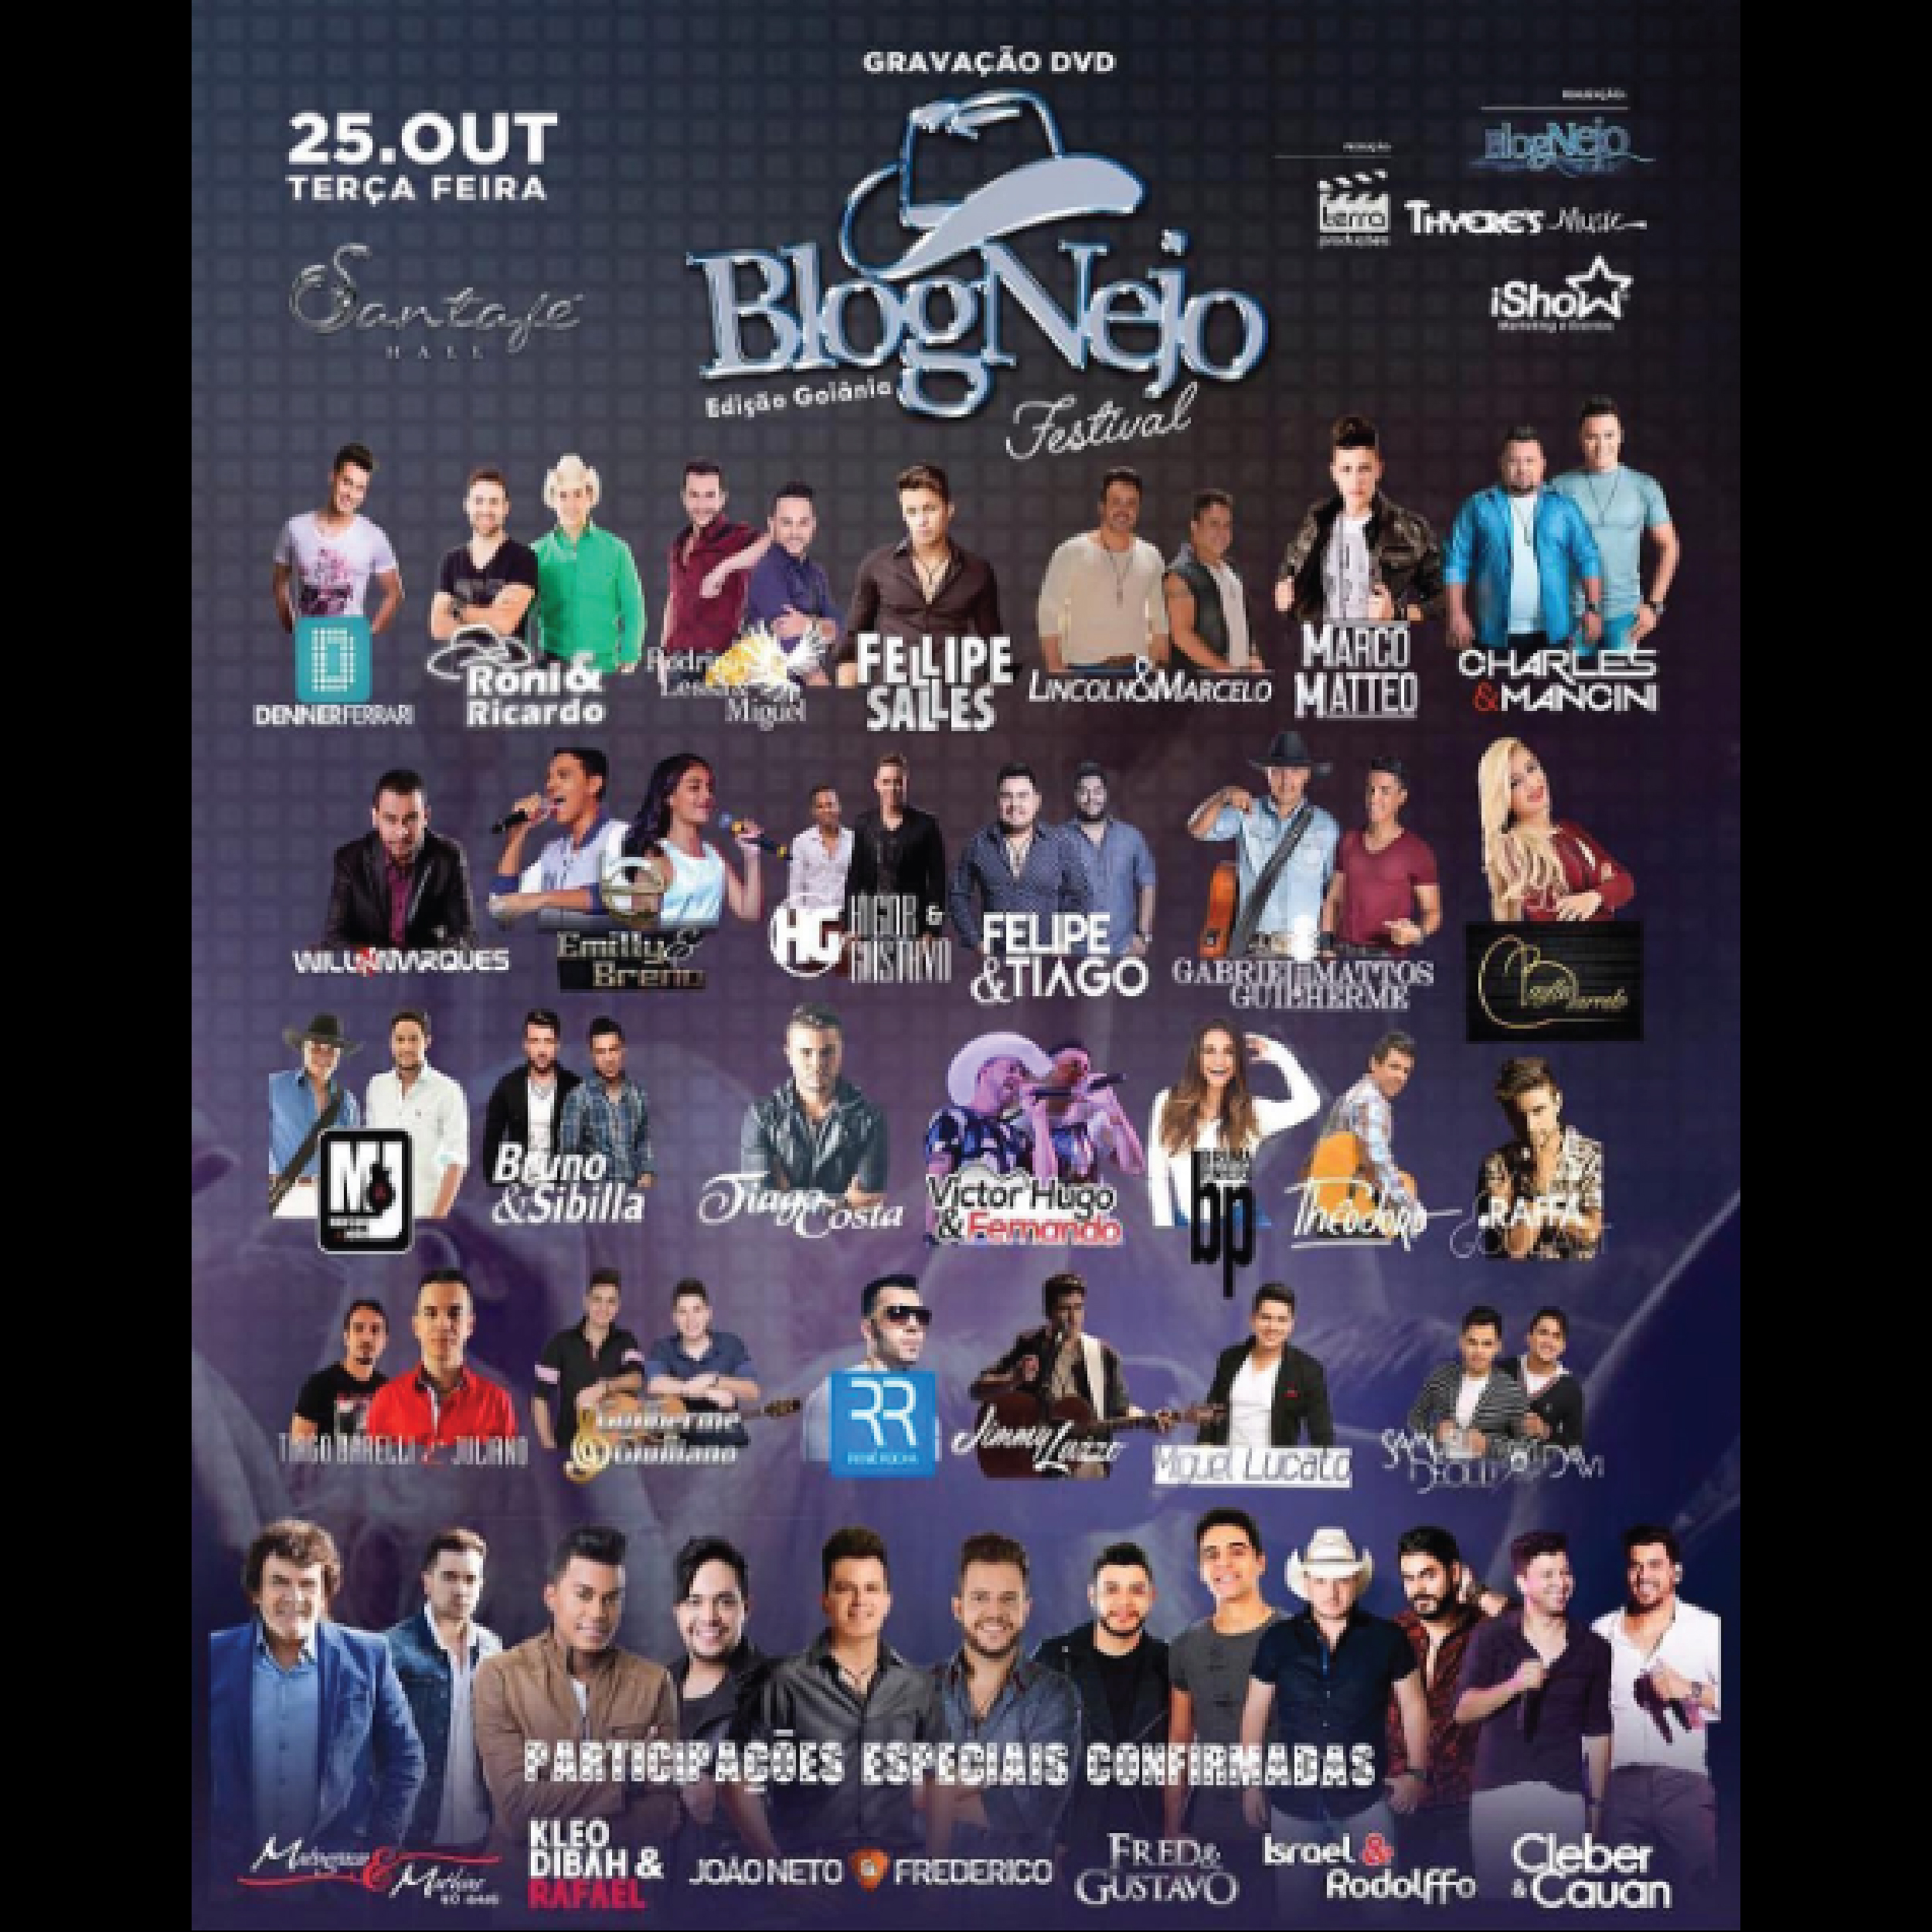 Festival Blognejo: É hoje!!!